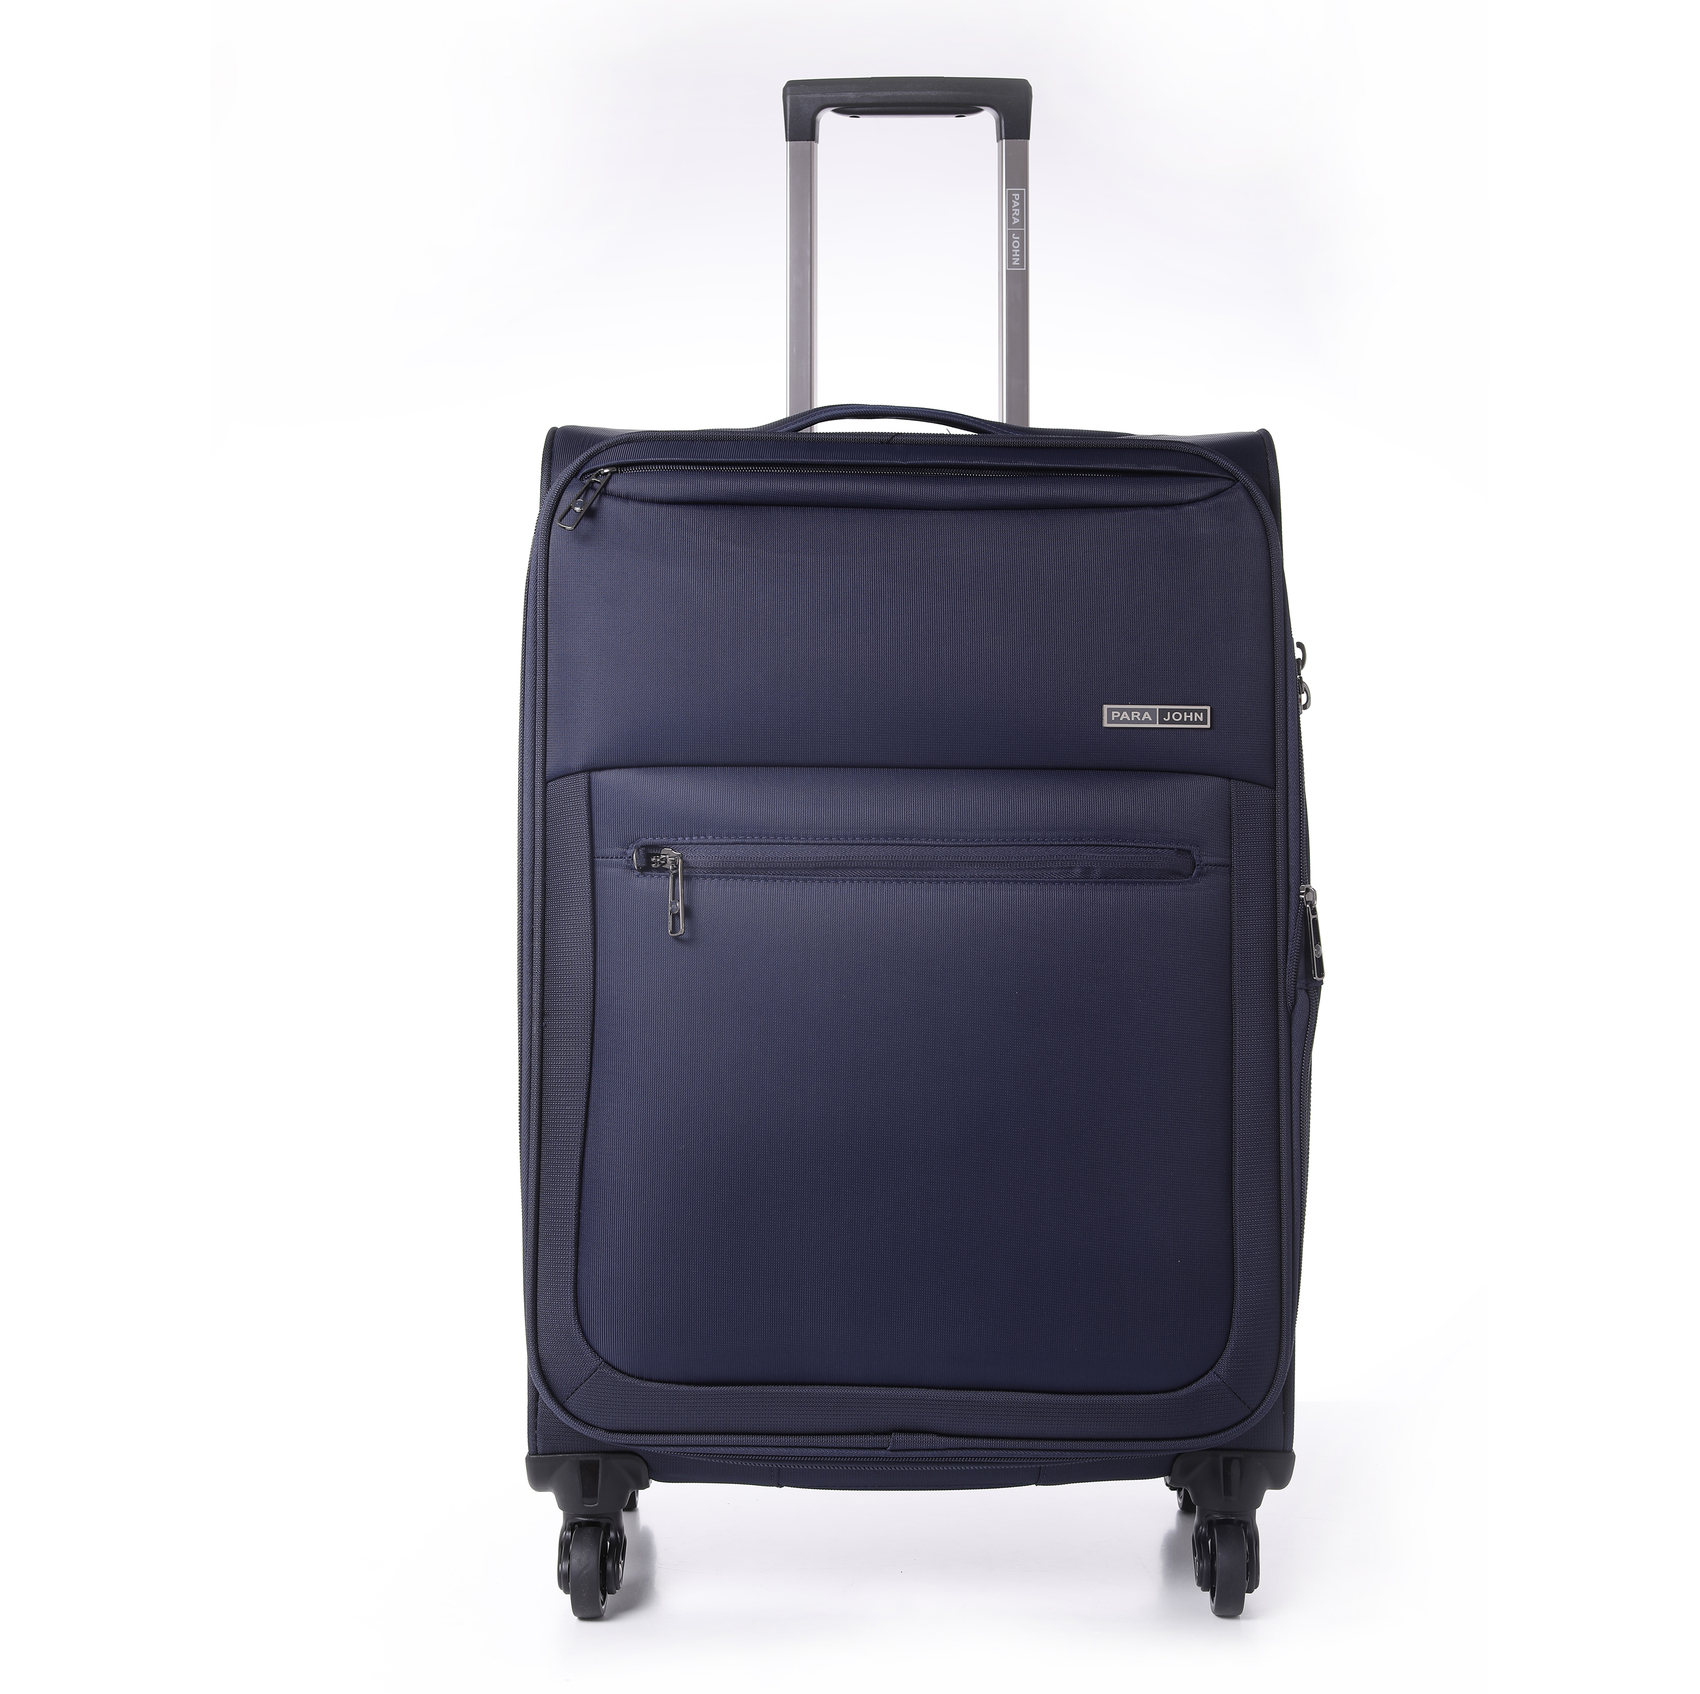 Para_john Para John Travel Luggage Suitcase Set Of 3 Trolley Bag